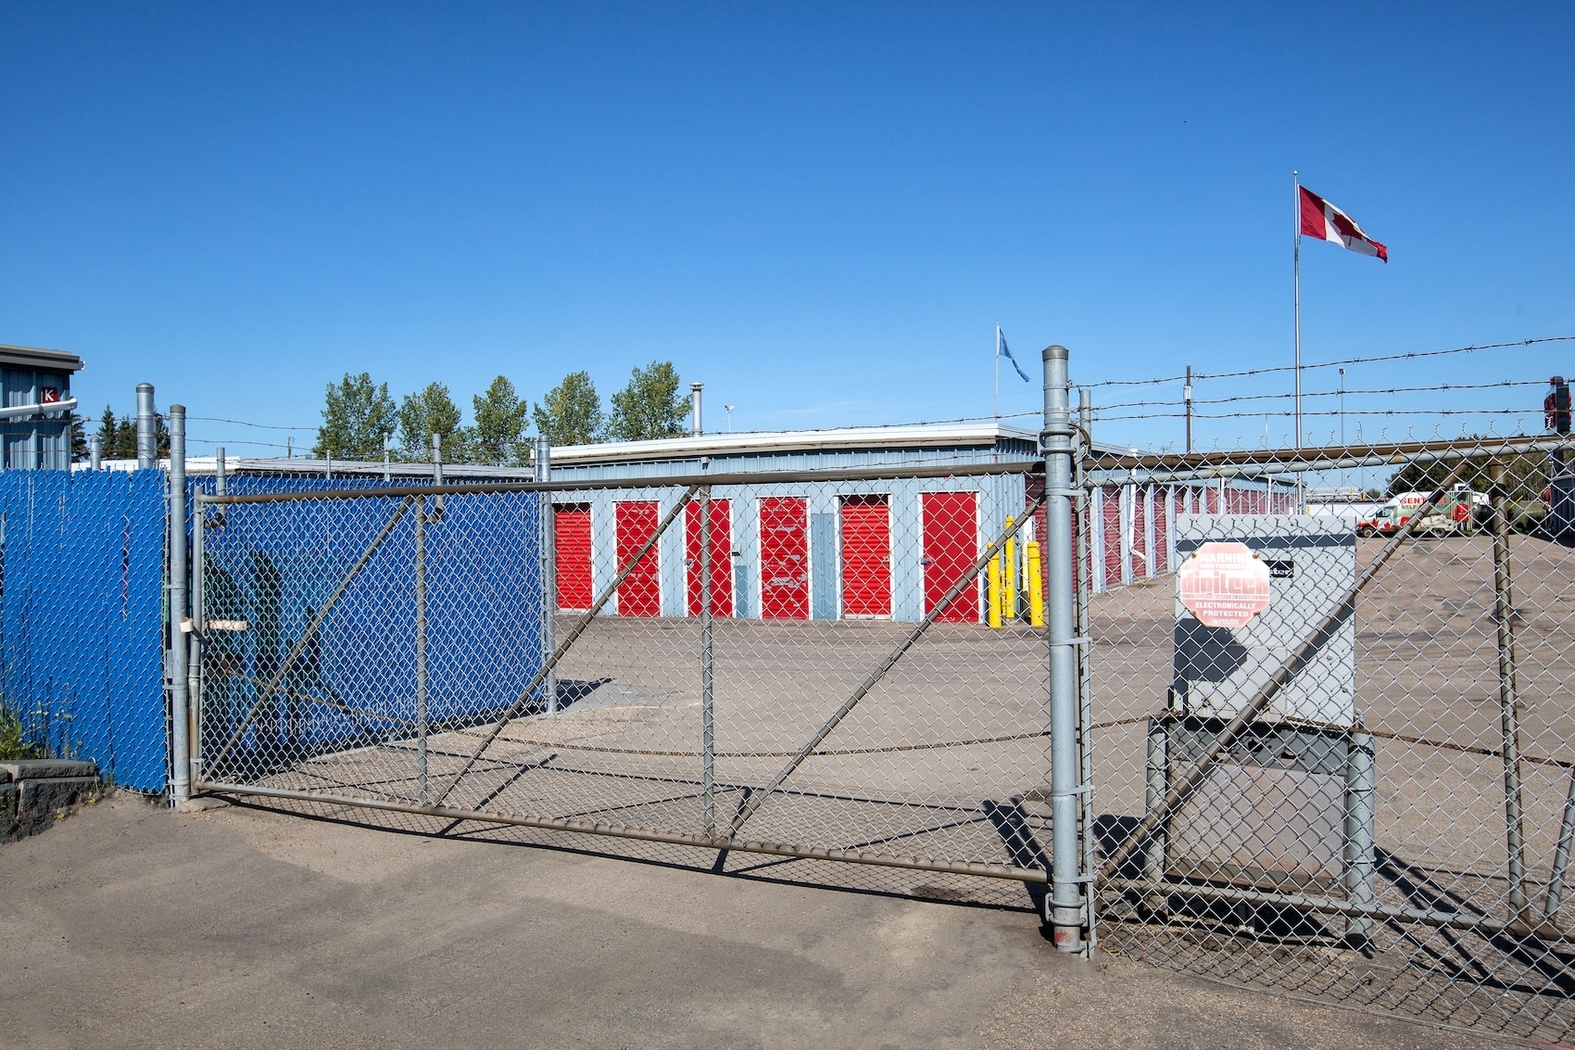 Sentinel Storage - Edmonton West - Self-Storage